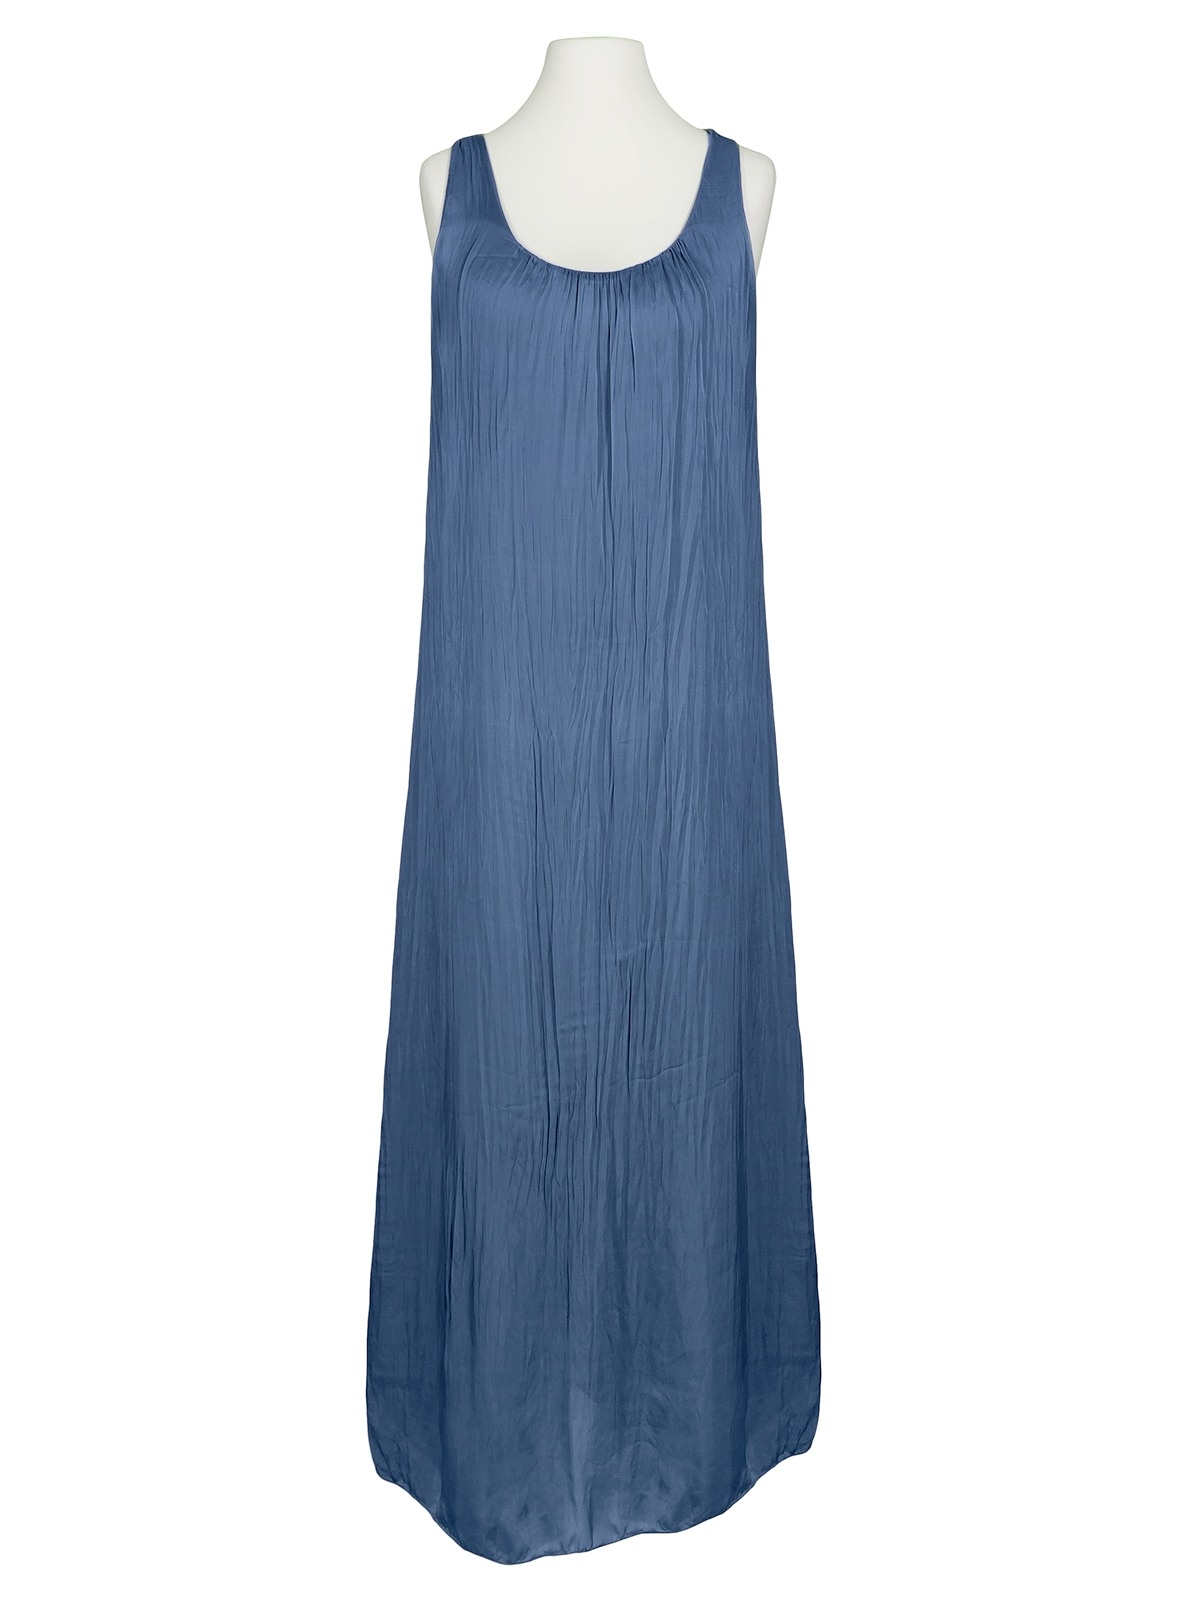 13 Top Kleid Lang Blau Bester Preis15 Erstaunlich Kleid Lang Blau Galerie